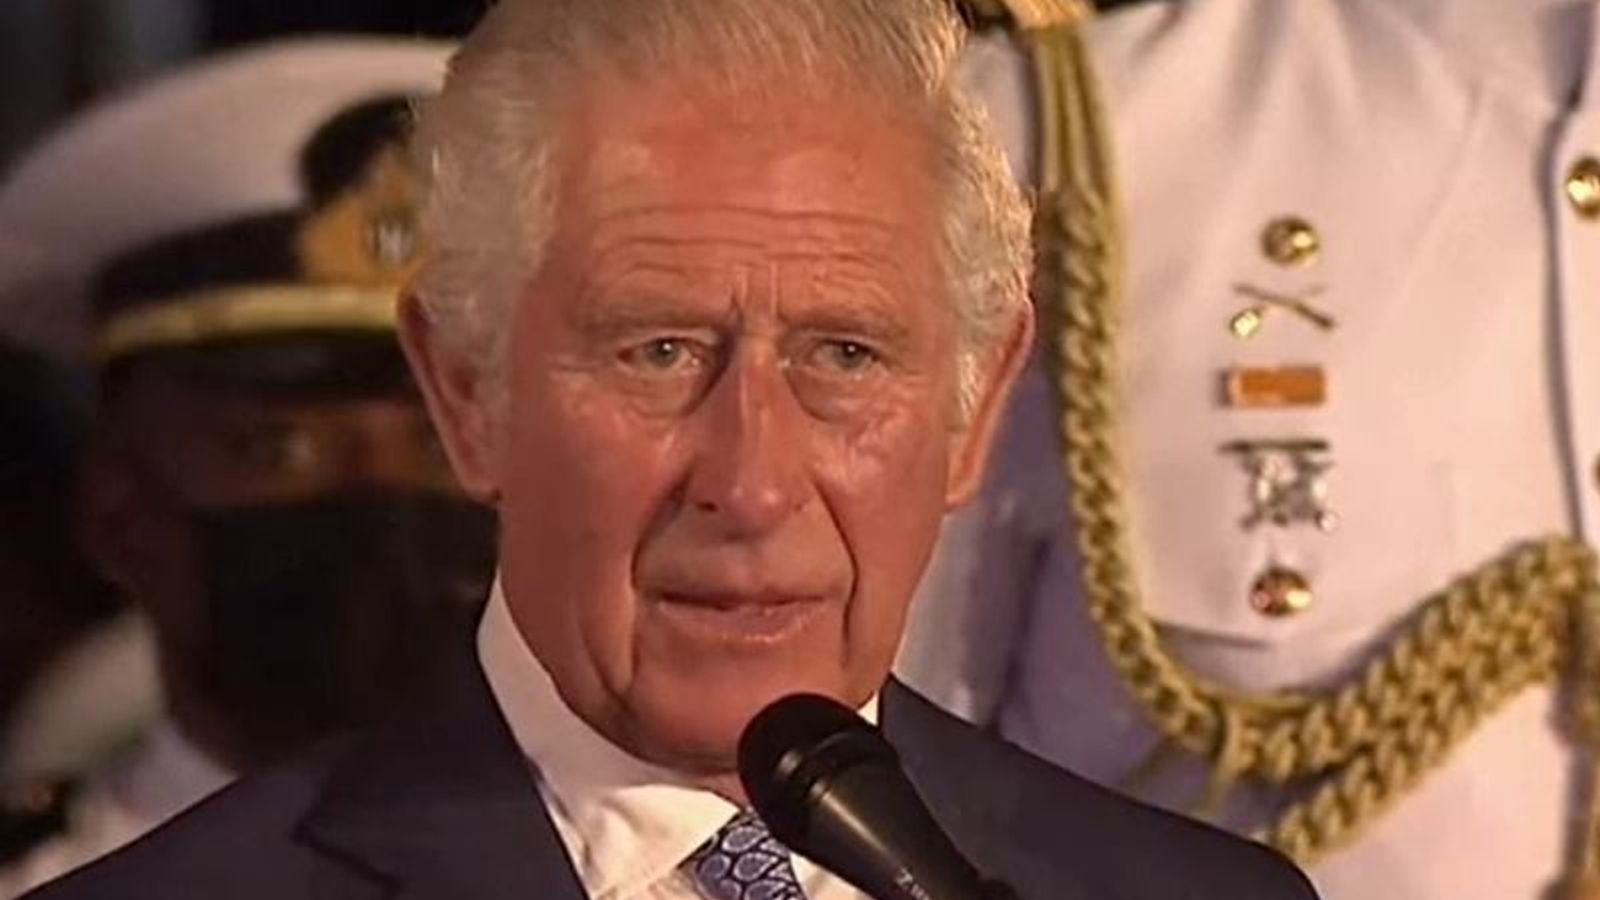 Mantan ajudan Pangeran Charles berkoordinasi dengan ‘pemecah masalah’ atas nominasi penghargaan untuk miliarder Saudi |  Berita Inggris